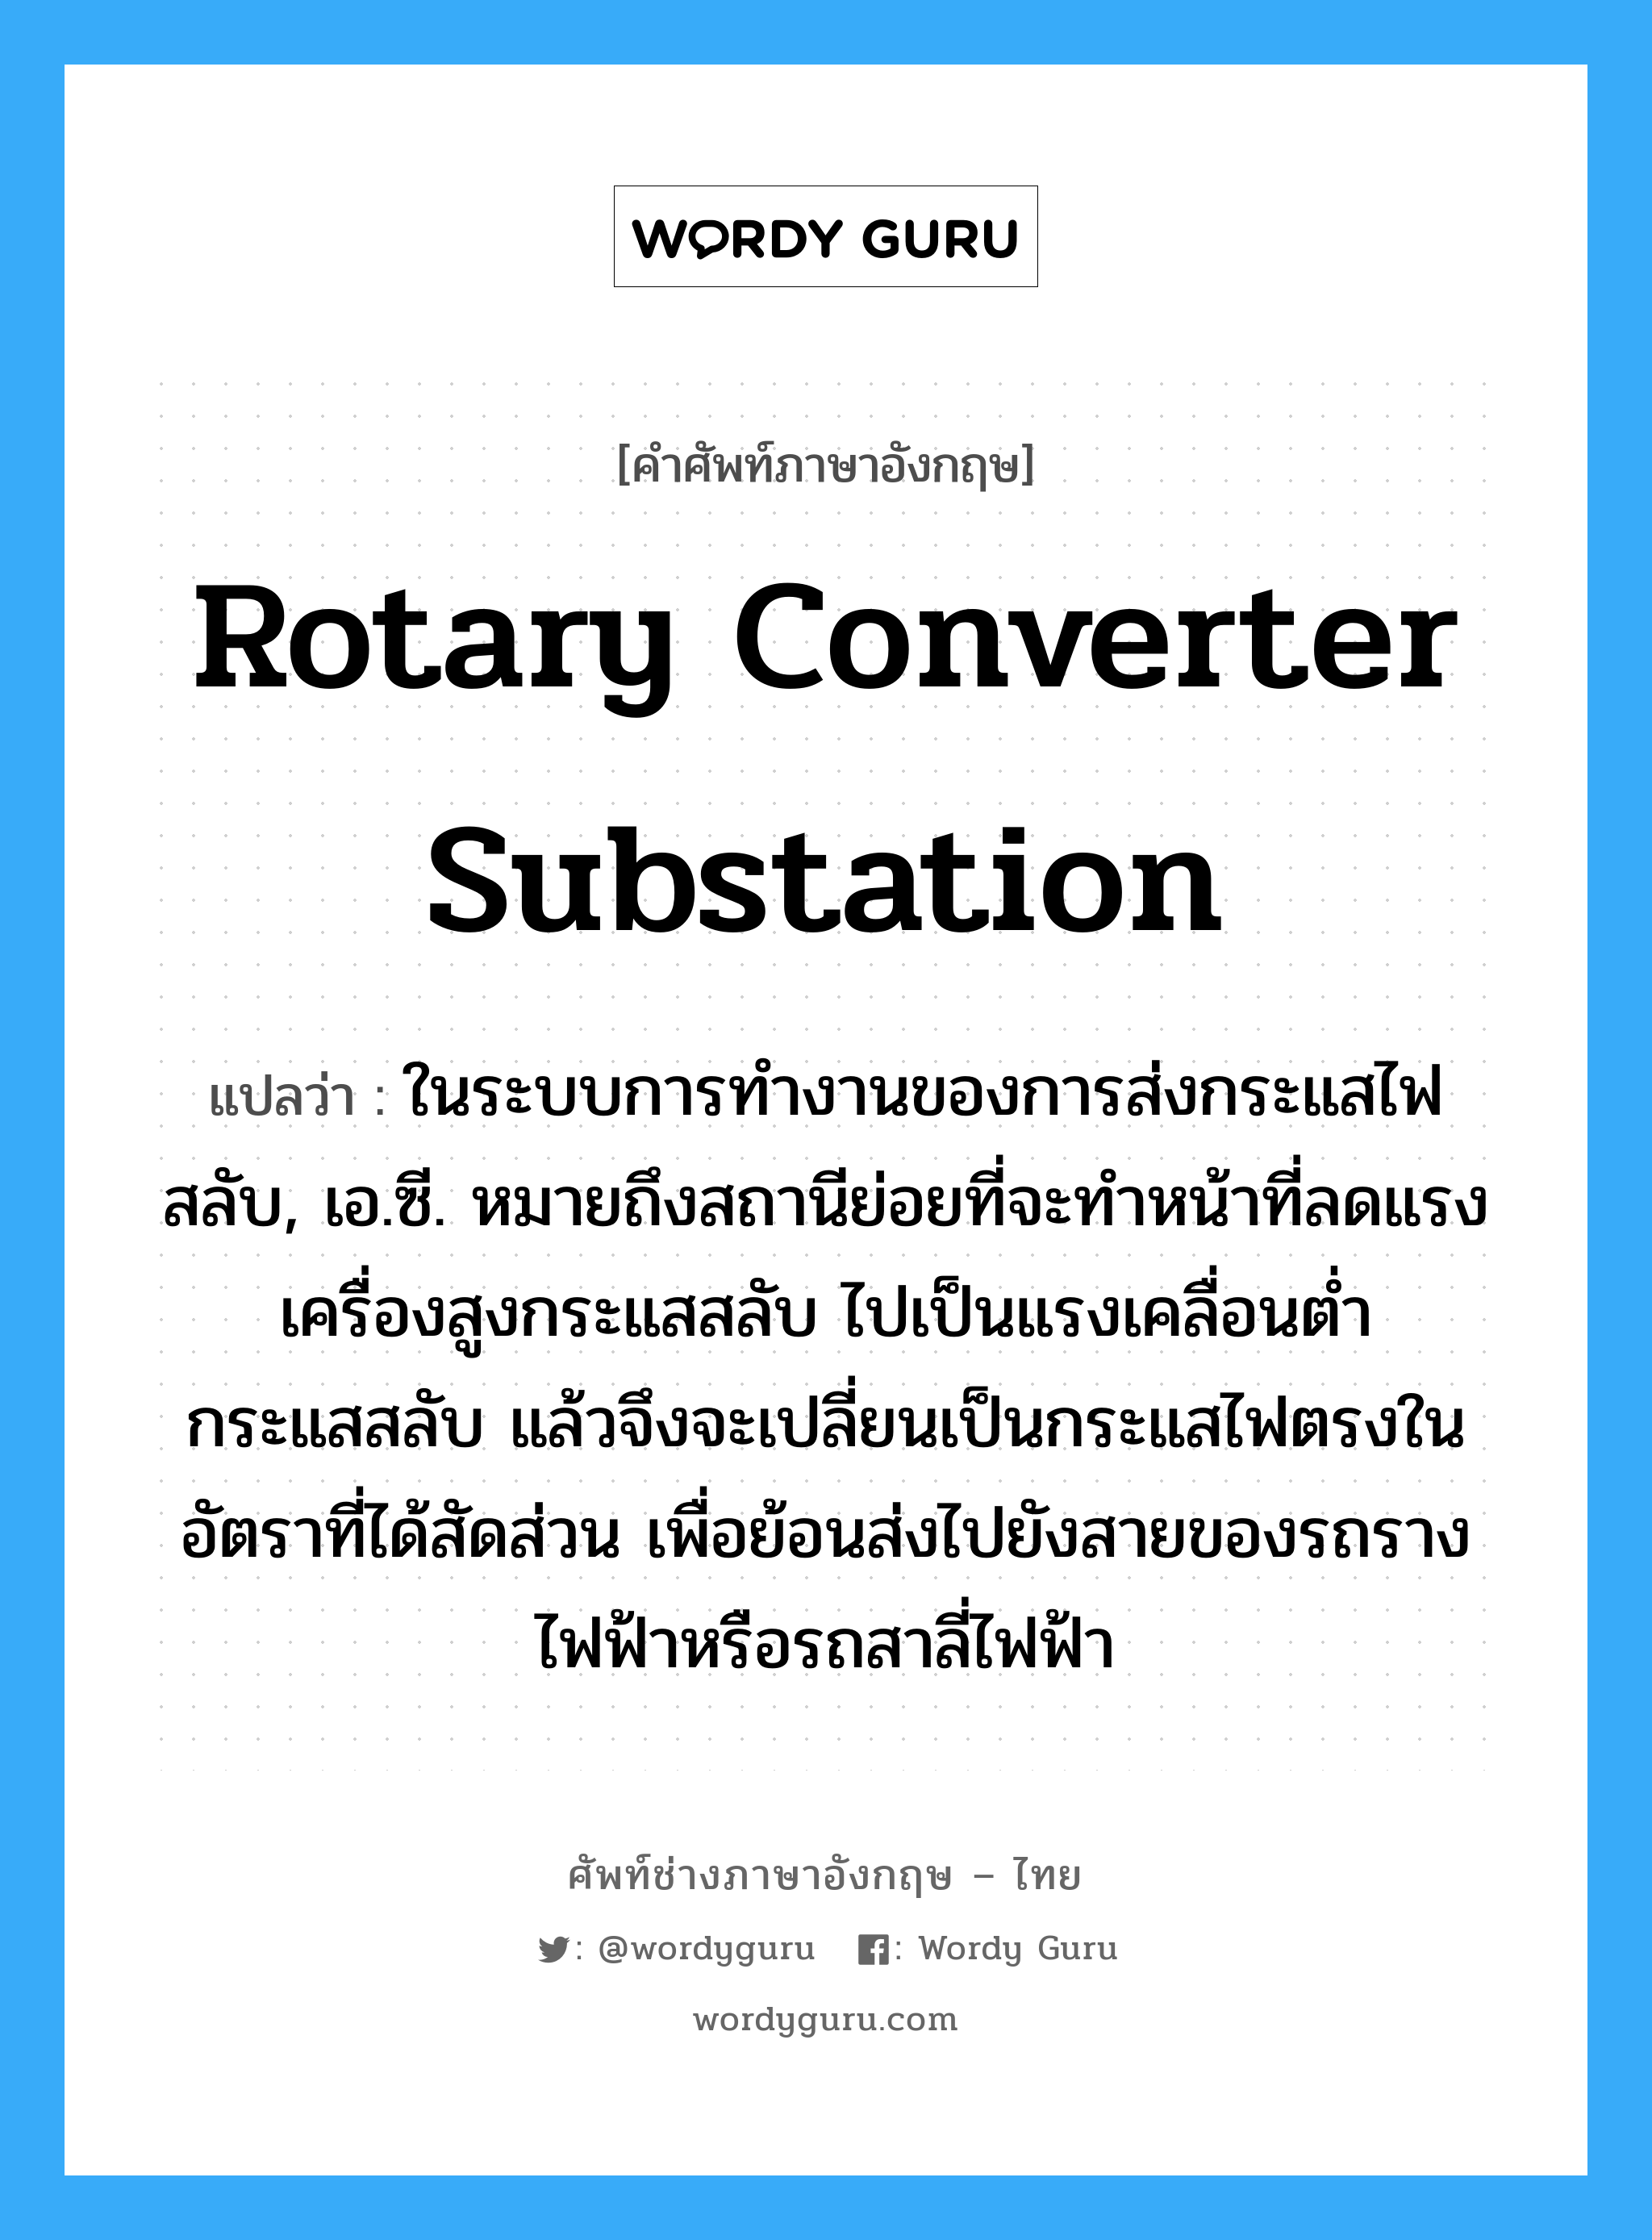 rotary converter substation แปลว่า?, คำศัพท์ช่างภาษาอังกฤษ - ไทย rotary converter substation คำศัพท์ภาษาอังกฤษ rotary converter substation แปลว่า ในระบบการทำงานของการส่งกระแสไฟสลับ, เอ.ซี. หมายถึงสถานีย่อยที่จะทำหน้าที่ลดแรงเครื่องสูงกระแสสลับ ไปเป็นแรงเคลื่อนต่ำกระแสสลับ แล้วจึงจะเปลี่ยนเป็นกระแสไฟตรงในอัตราที่ได้สัดส่วน เพื่อย้อนส่งไปยังสายของรถรางไฟฟ้าหรือรถสาลี่ไฟฟ้า